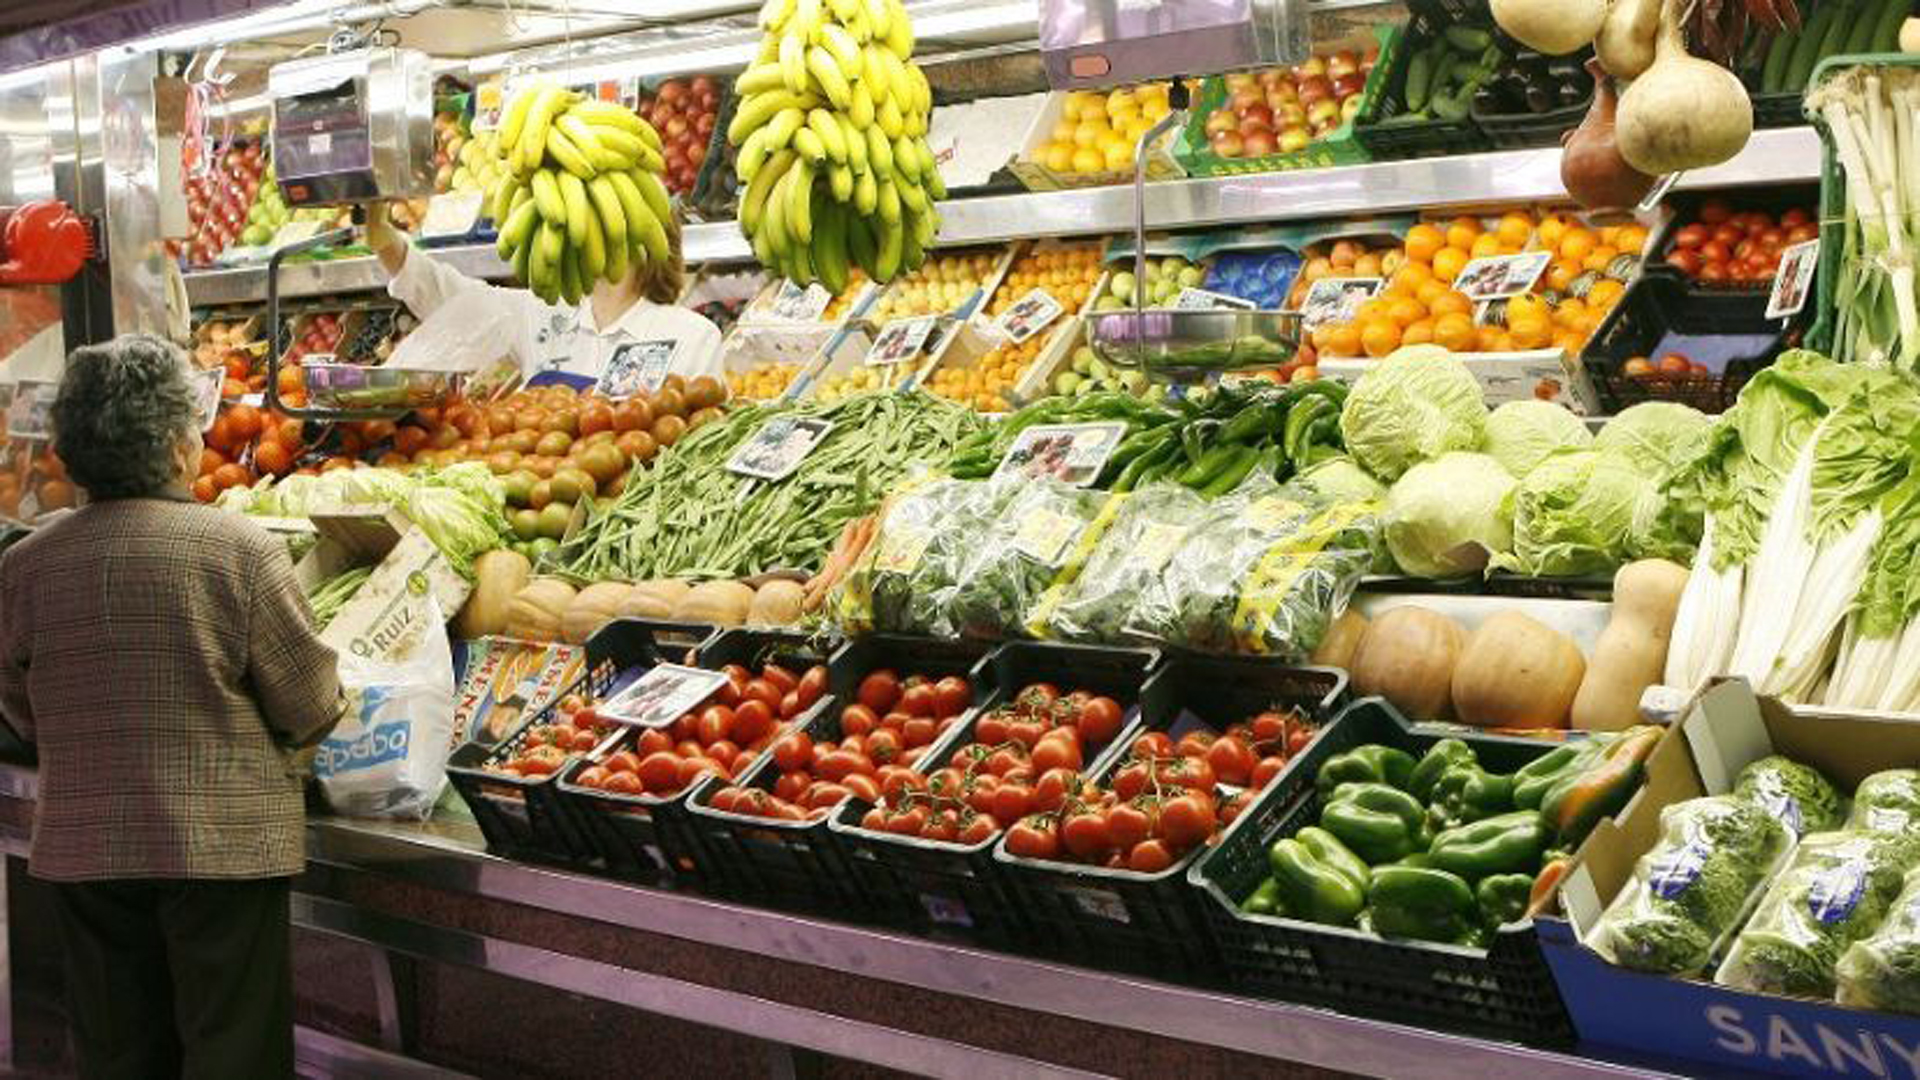 Las frutas y las verduras son de los alimentos que más subieron en un año, con incrementos cercanos al 250% en algunos casos